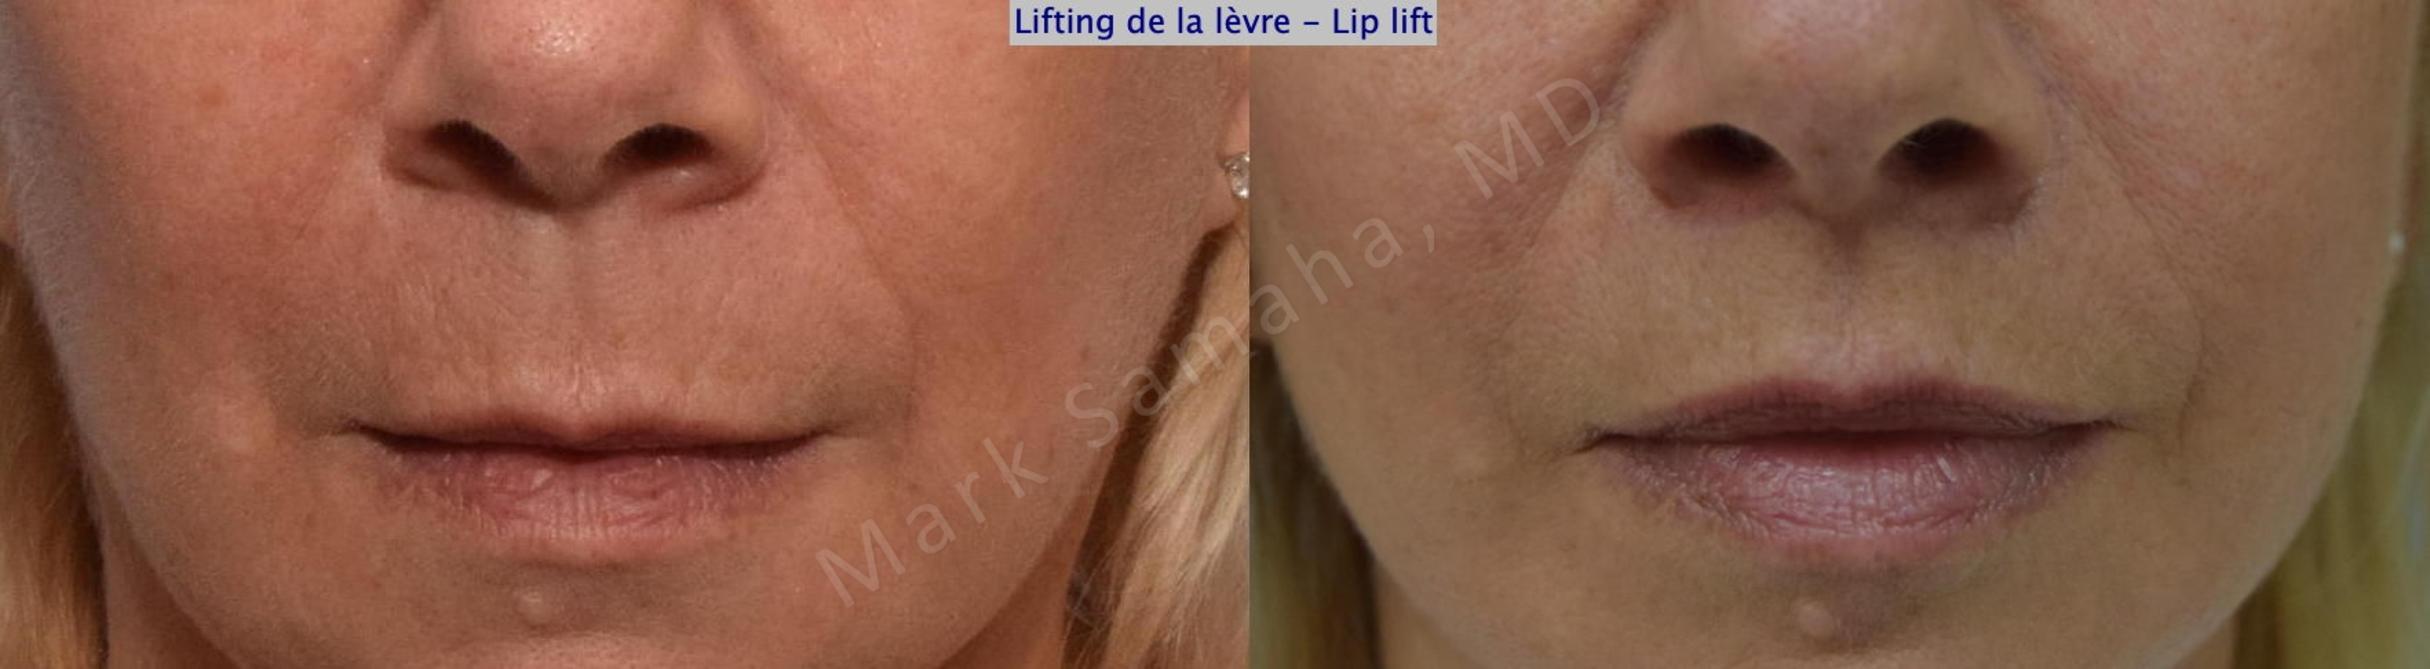 Before & After Lip Lift / Lifting de la lèvre supérieure Case 169 Front View in Mount Royal, QC